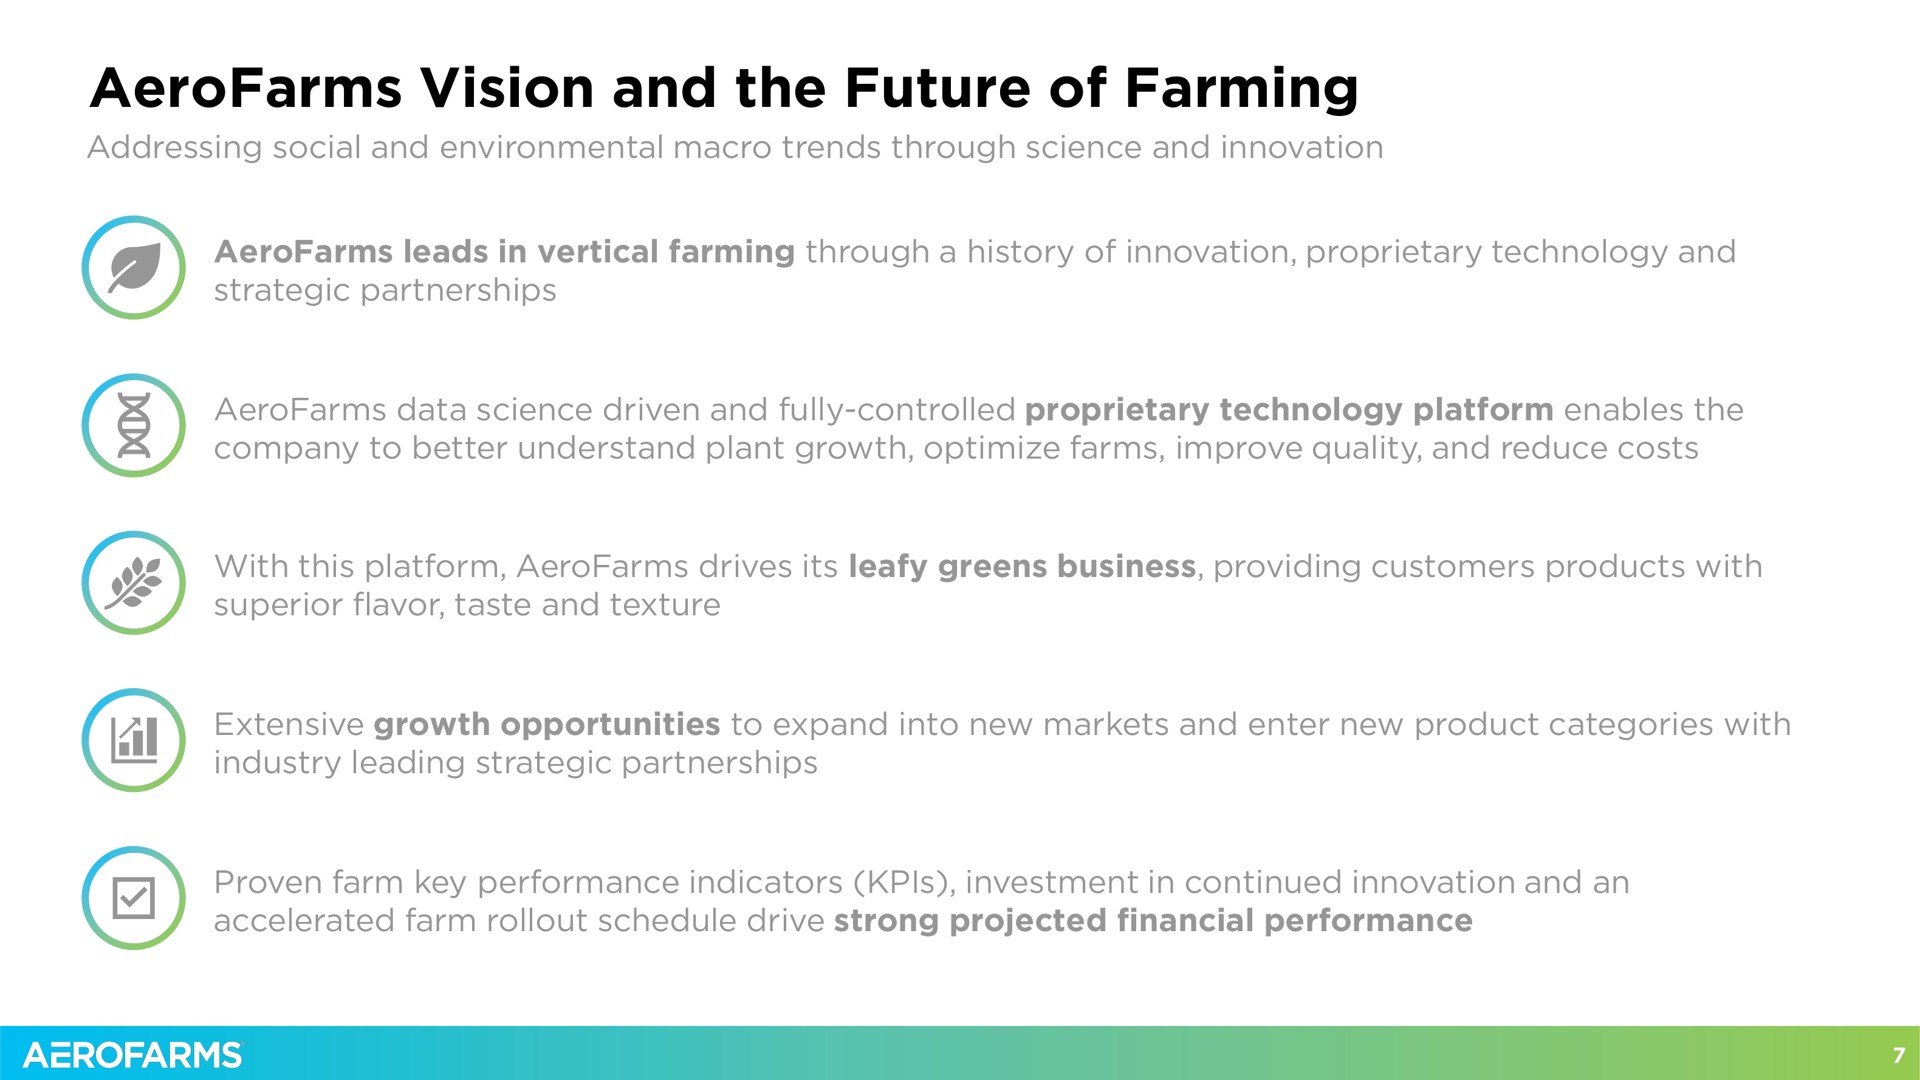 vision and the future of farming | AeroFarms